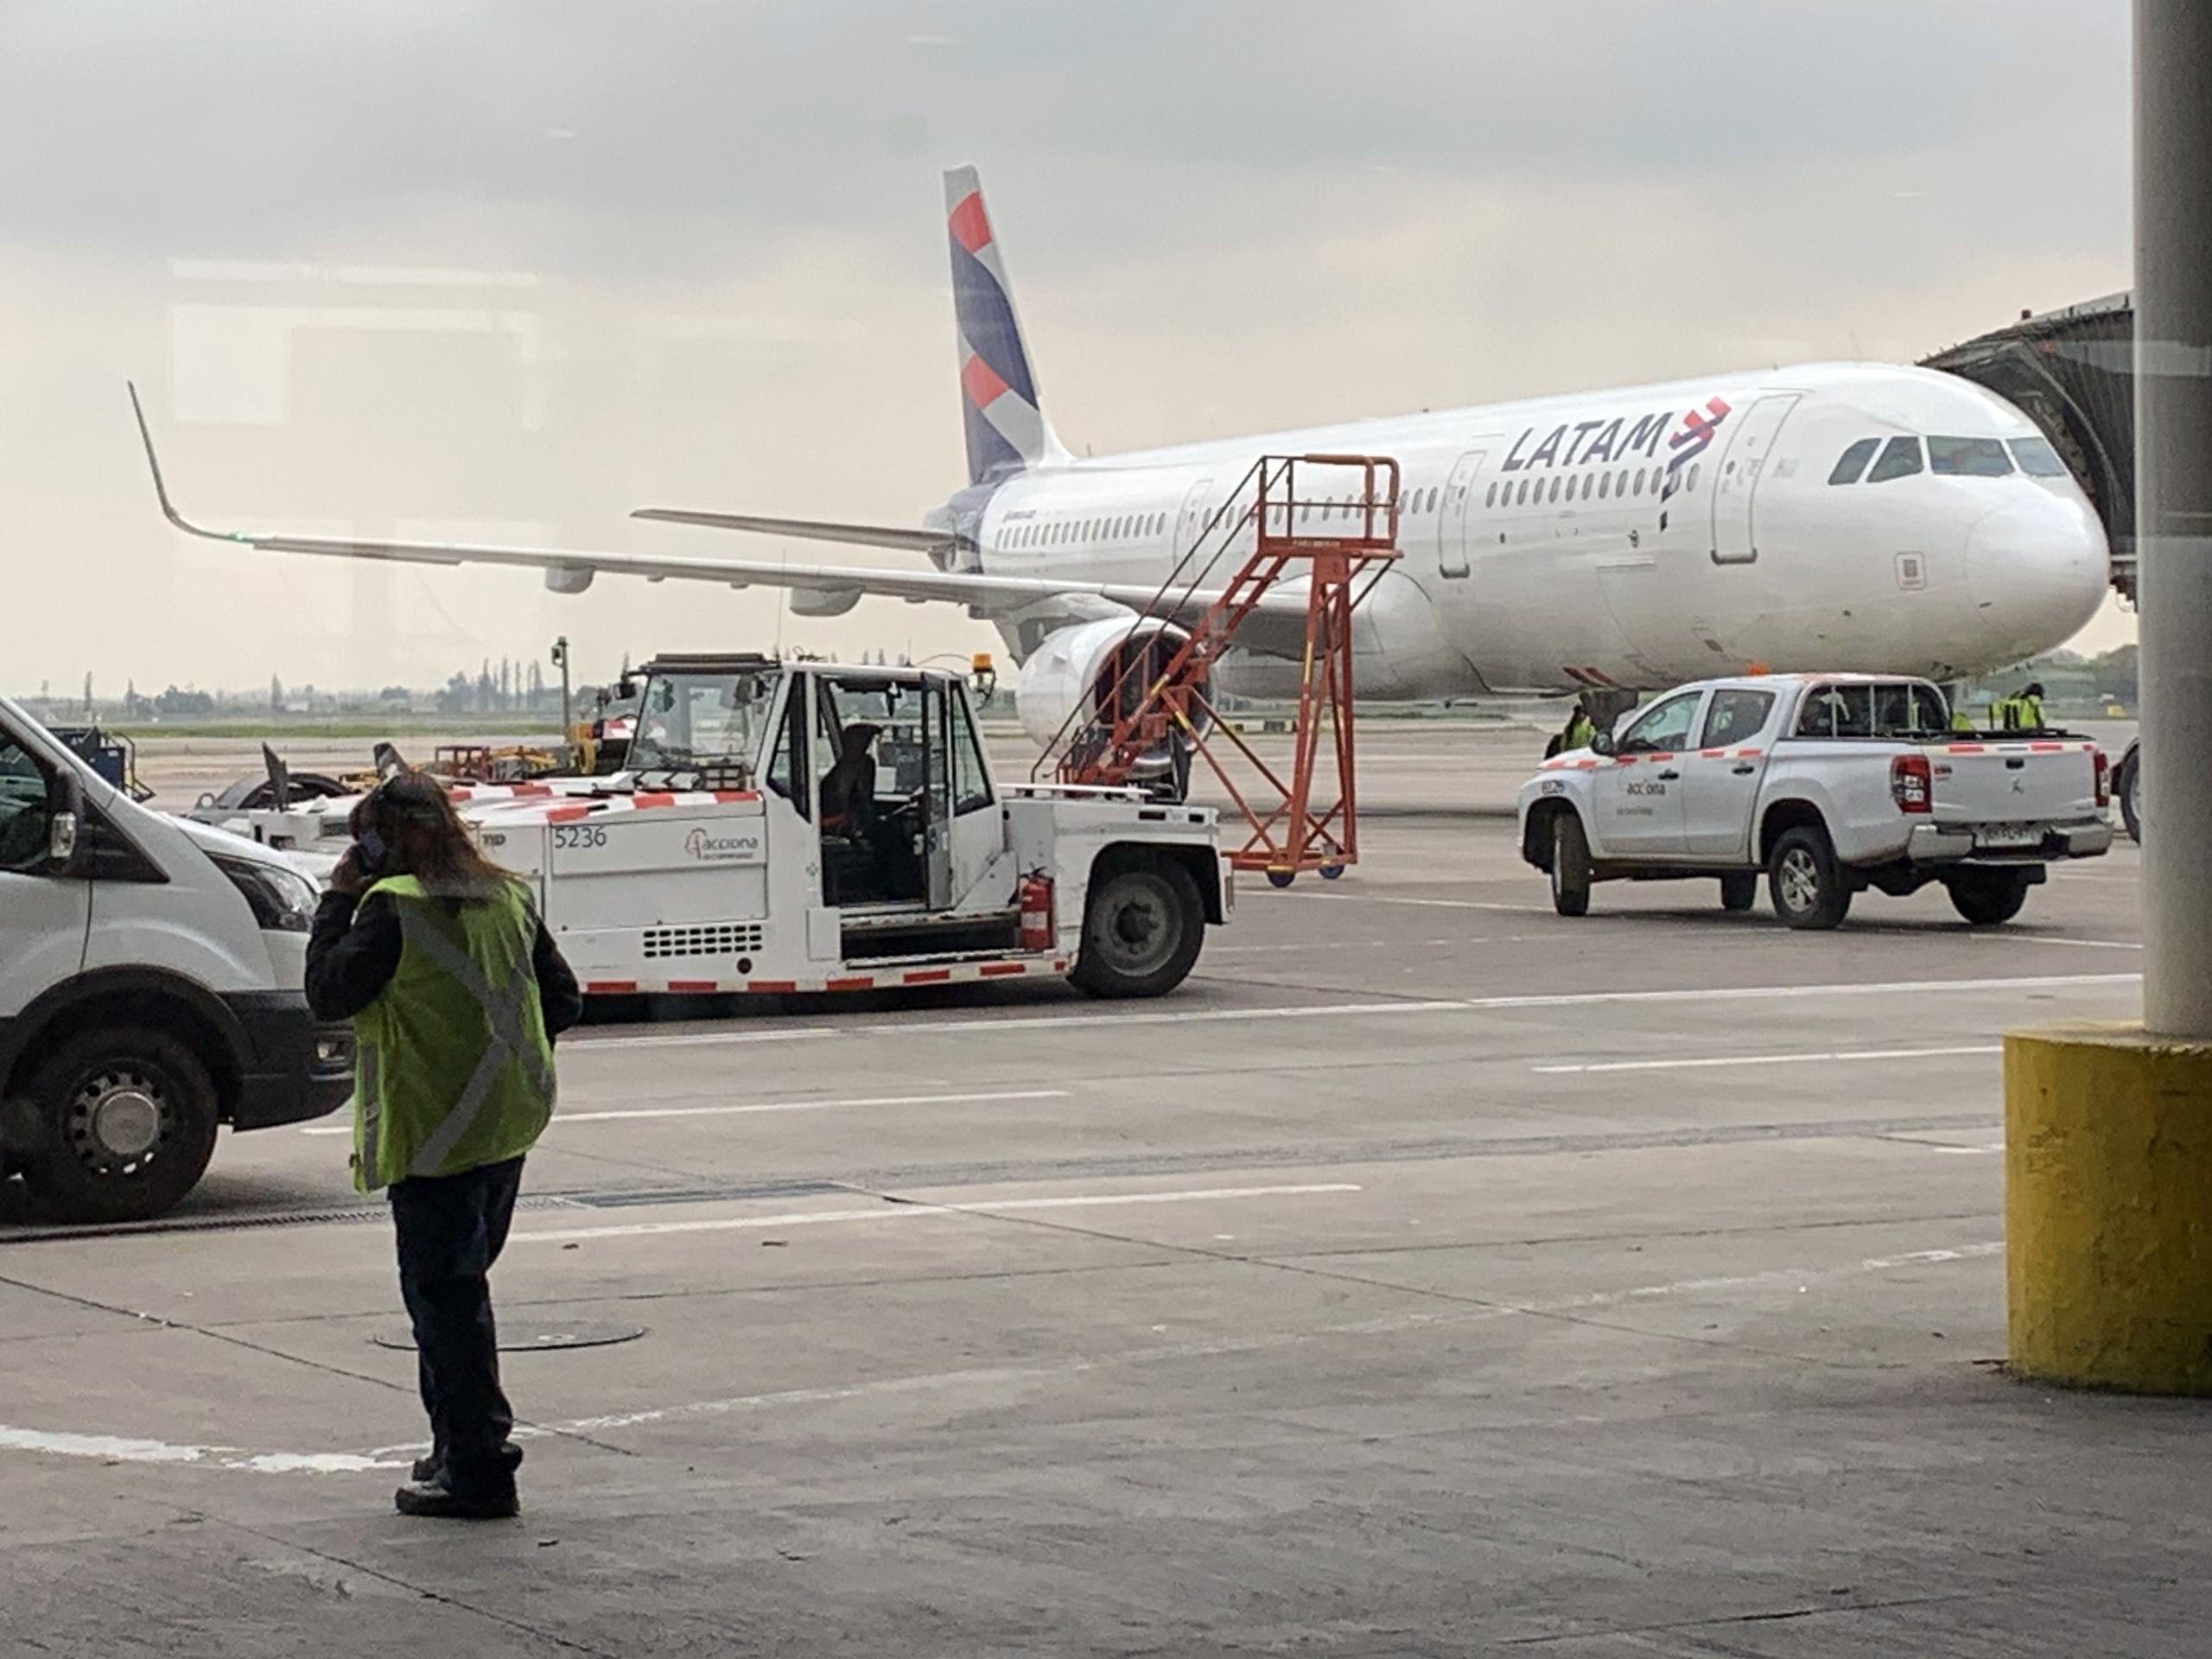 LATAM Airlines dijo en un comunicado que se había producido un “incidente” durante el vuelo que causó un “fuerte movimiento”.